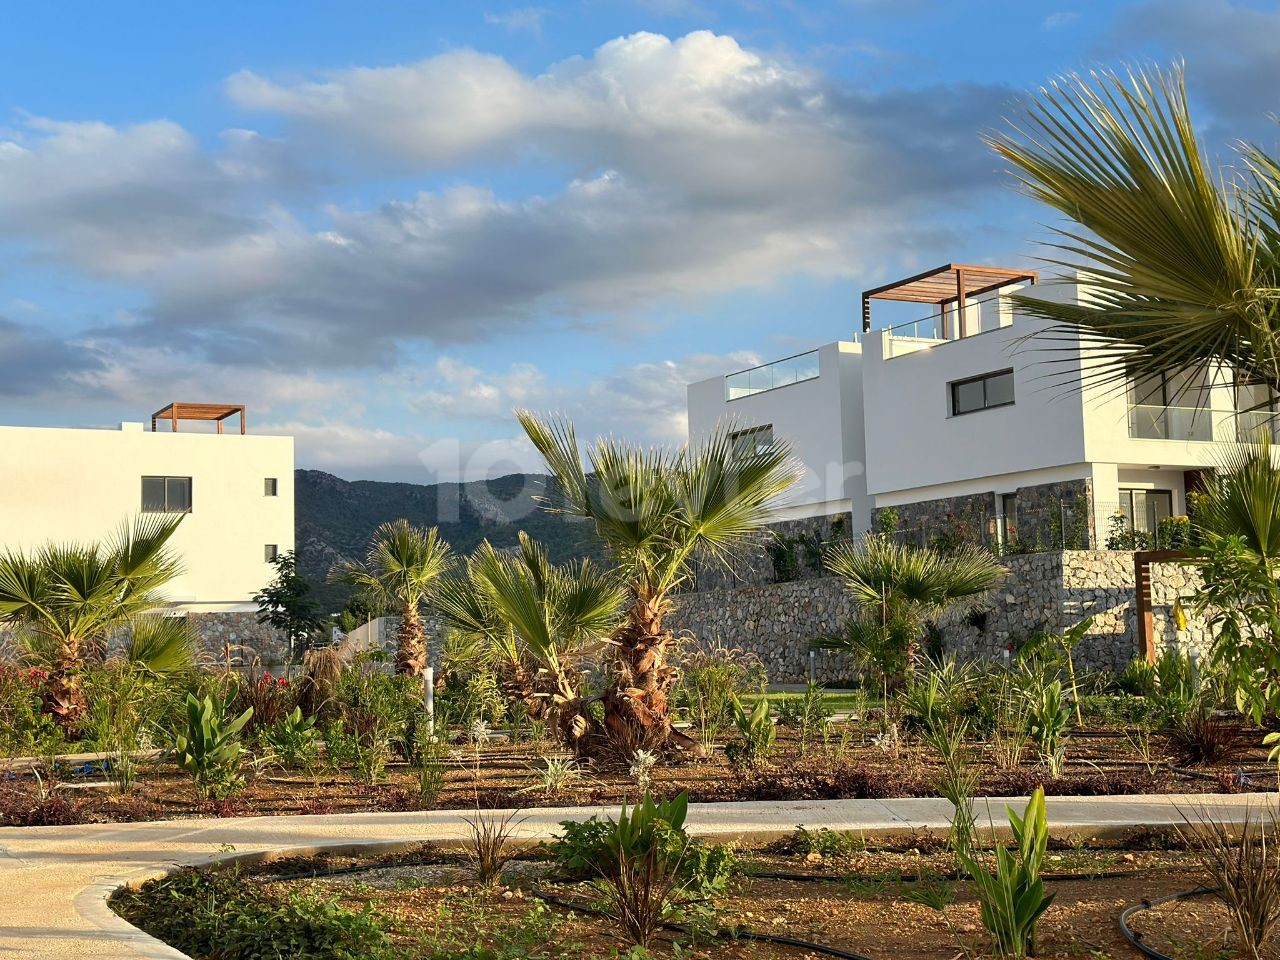 Loft 1+1, moderner, moderner Wohnkomplex Casa del Mare befindet sich in einer Wohnanlage in NotherLand